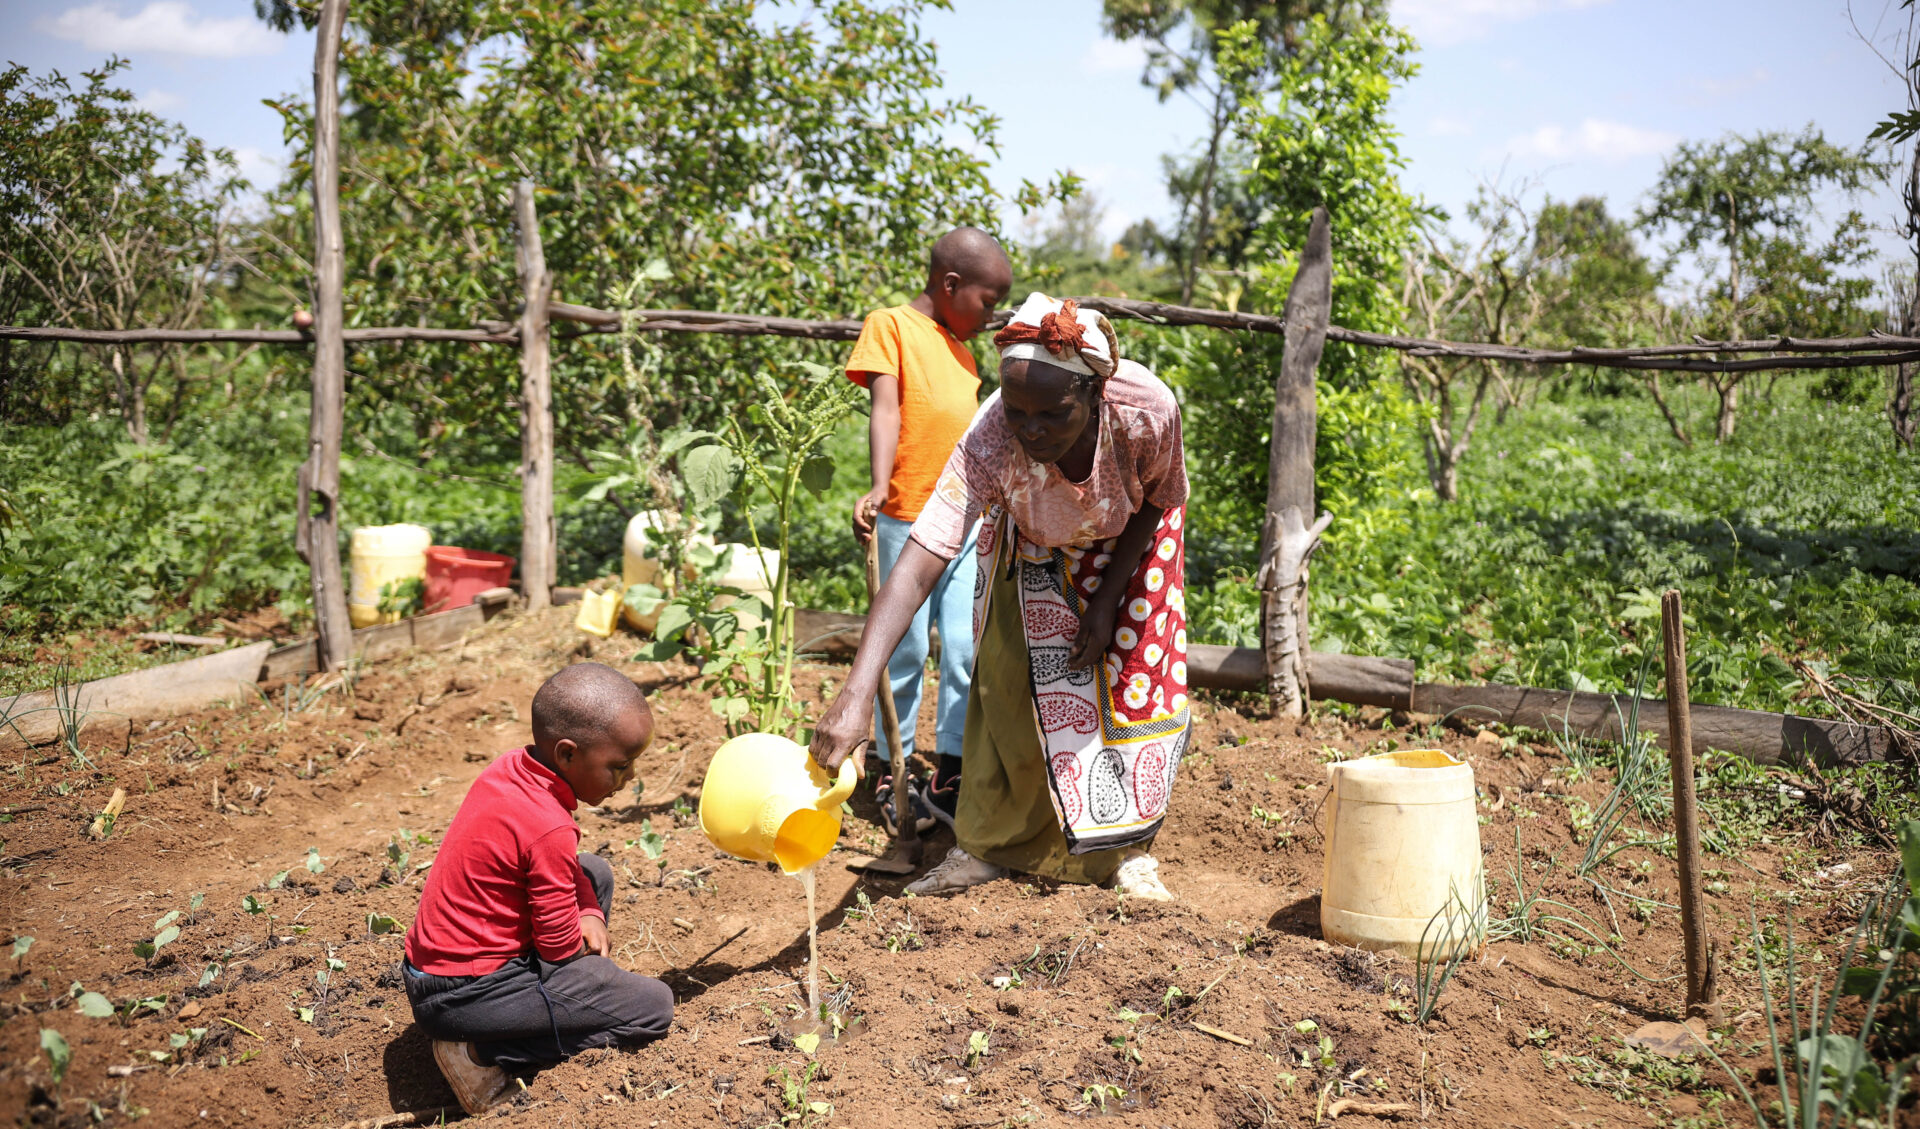 L’agroecologia consente agli agricoltori di vendere e di creare gruppi di risparmio che servono come reti di sicurezza per cibo, sementi, spese sanitarie e scolastiche durante i periodi di siccità.